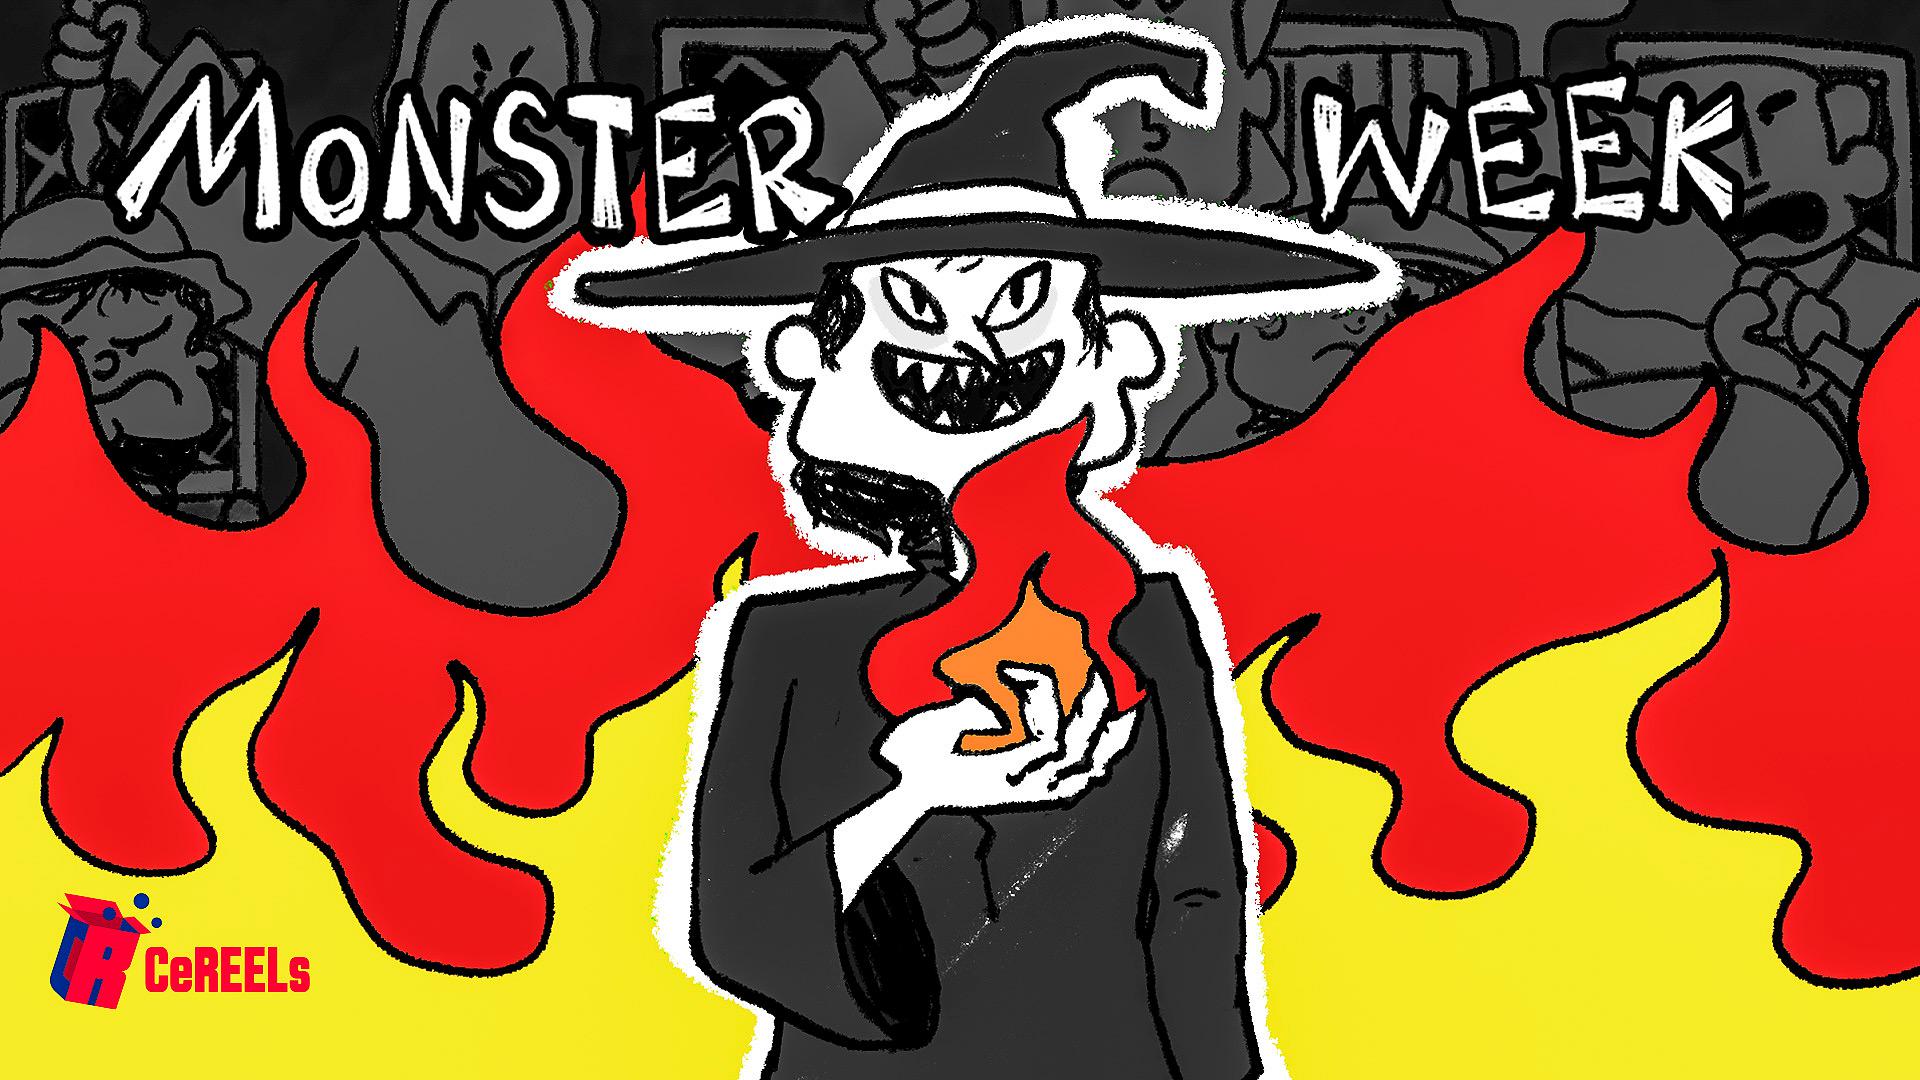 Monster Week